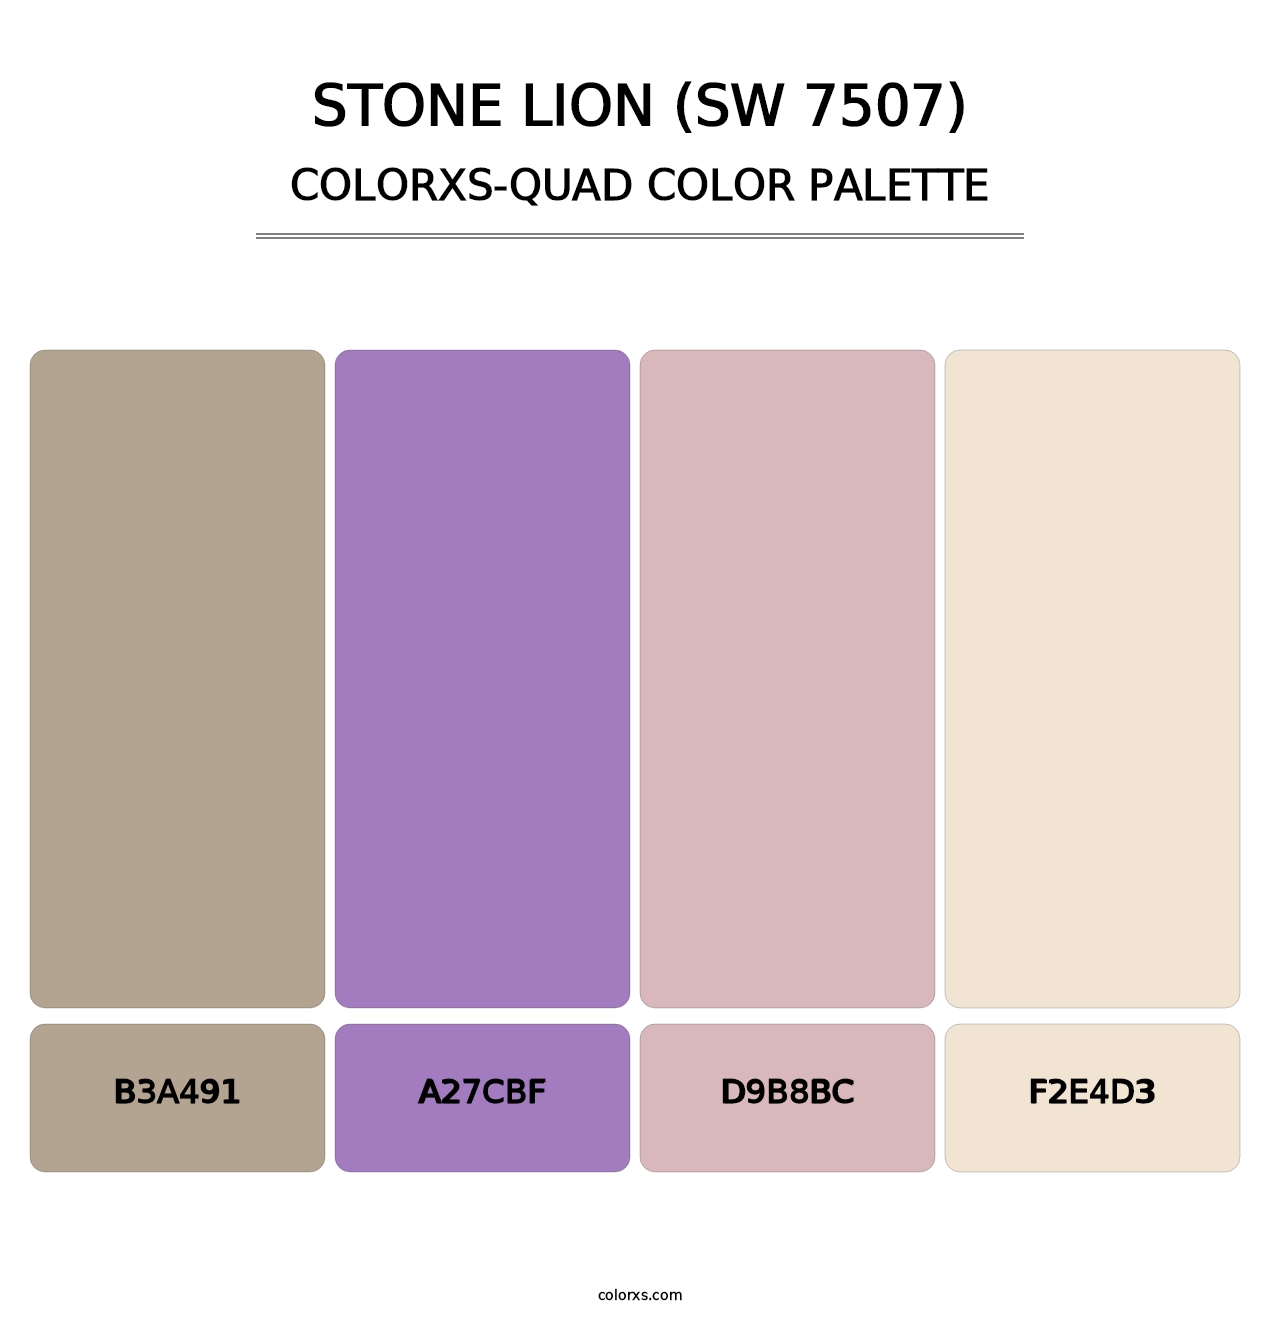 Stone Lion (SW 7507) - Colorxs Quad Palette